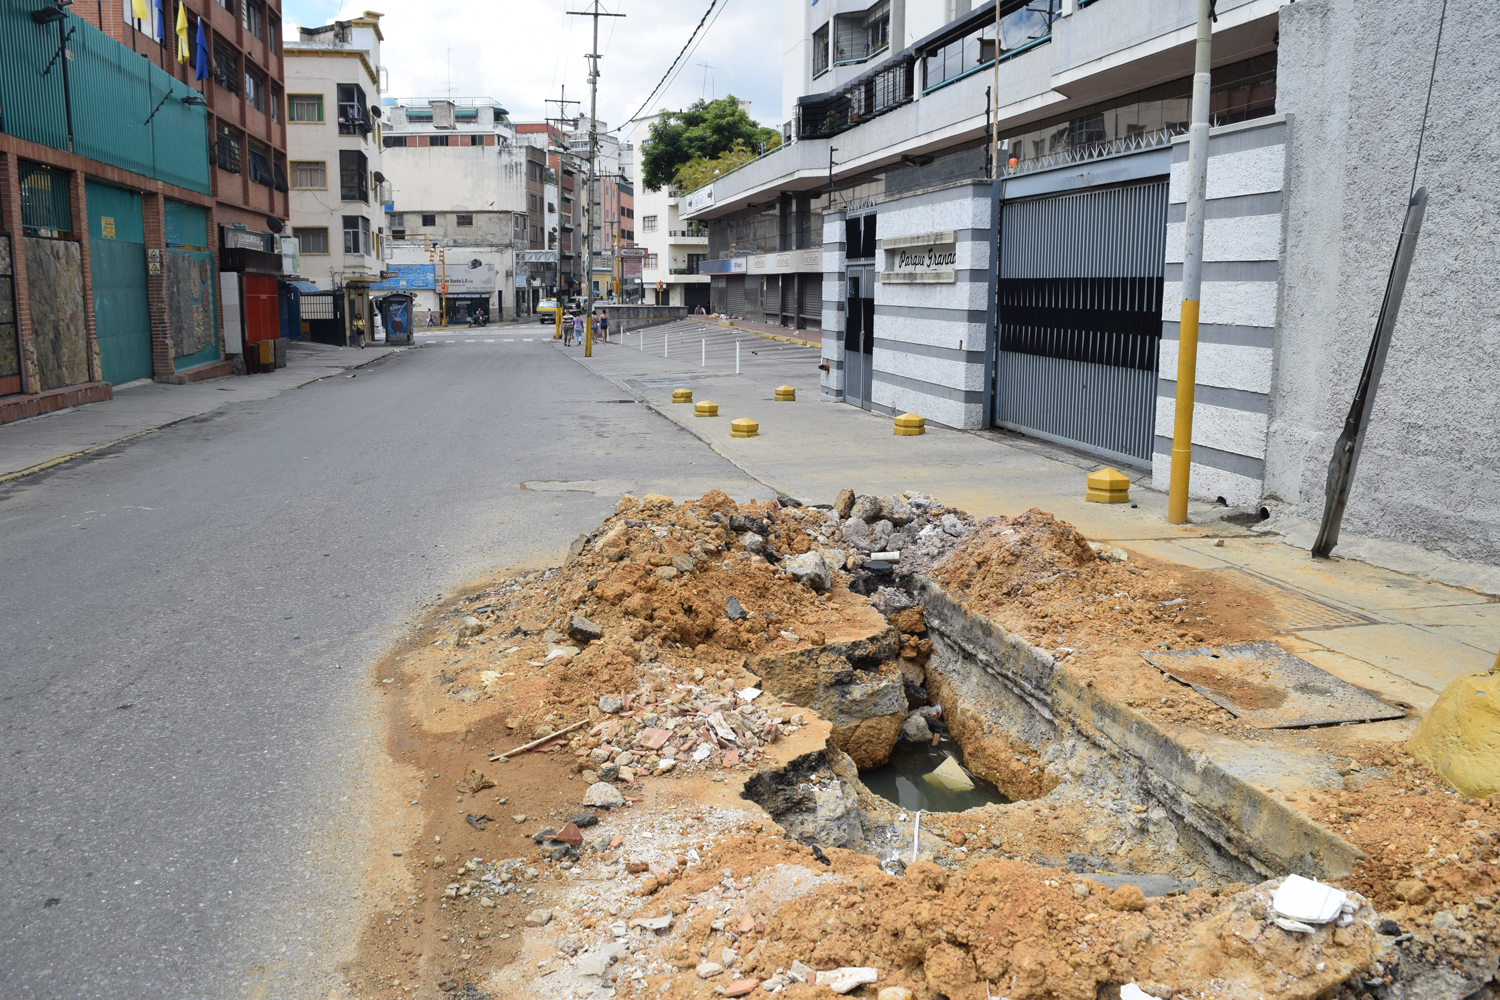 Caracas tiene calles propias de países destruidos por la guerra, afirma dirigente Danilo González